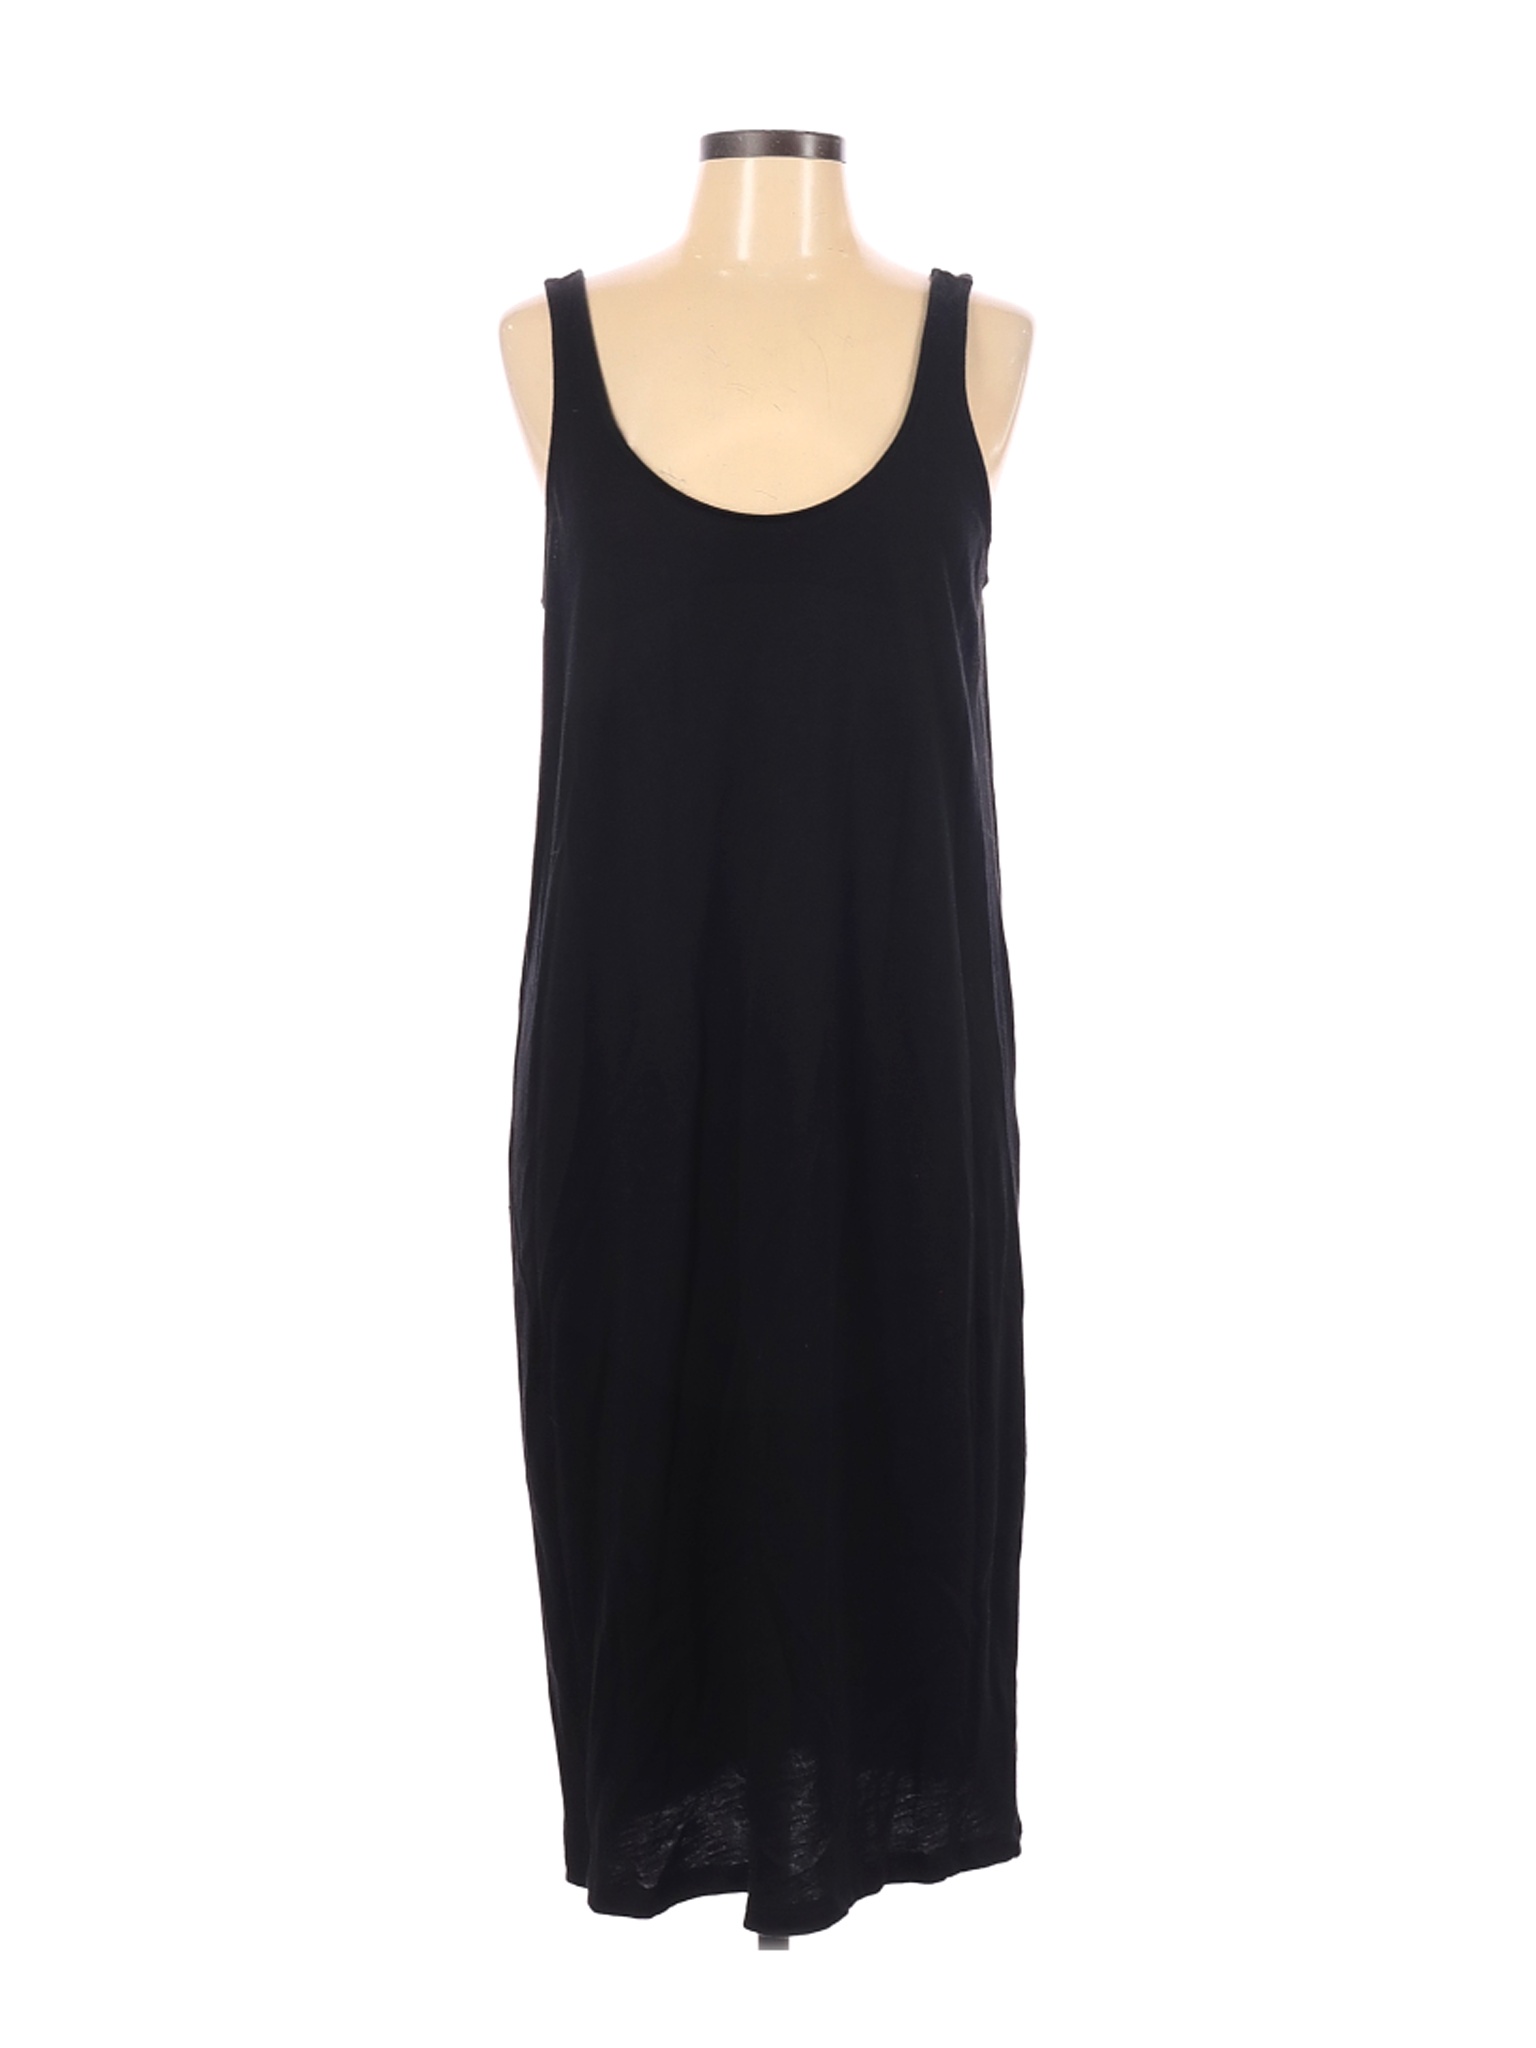 Old Navy Women Black Casual Dress L | eBay